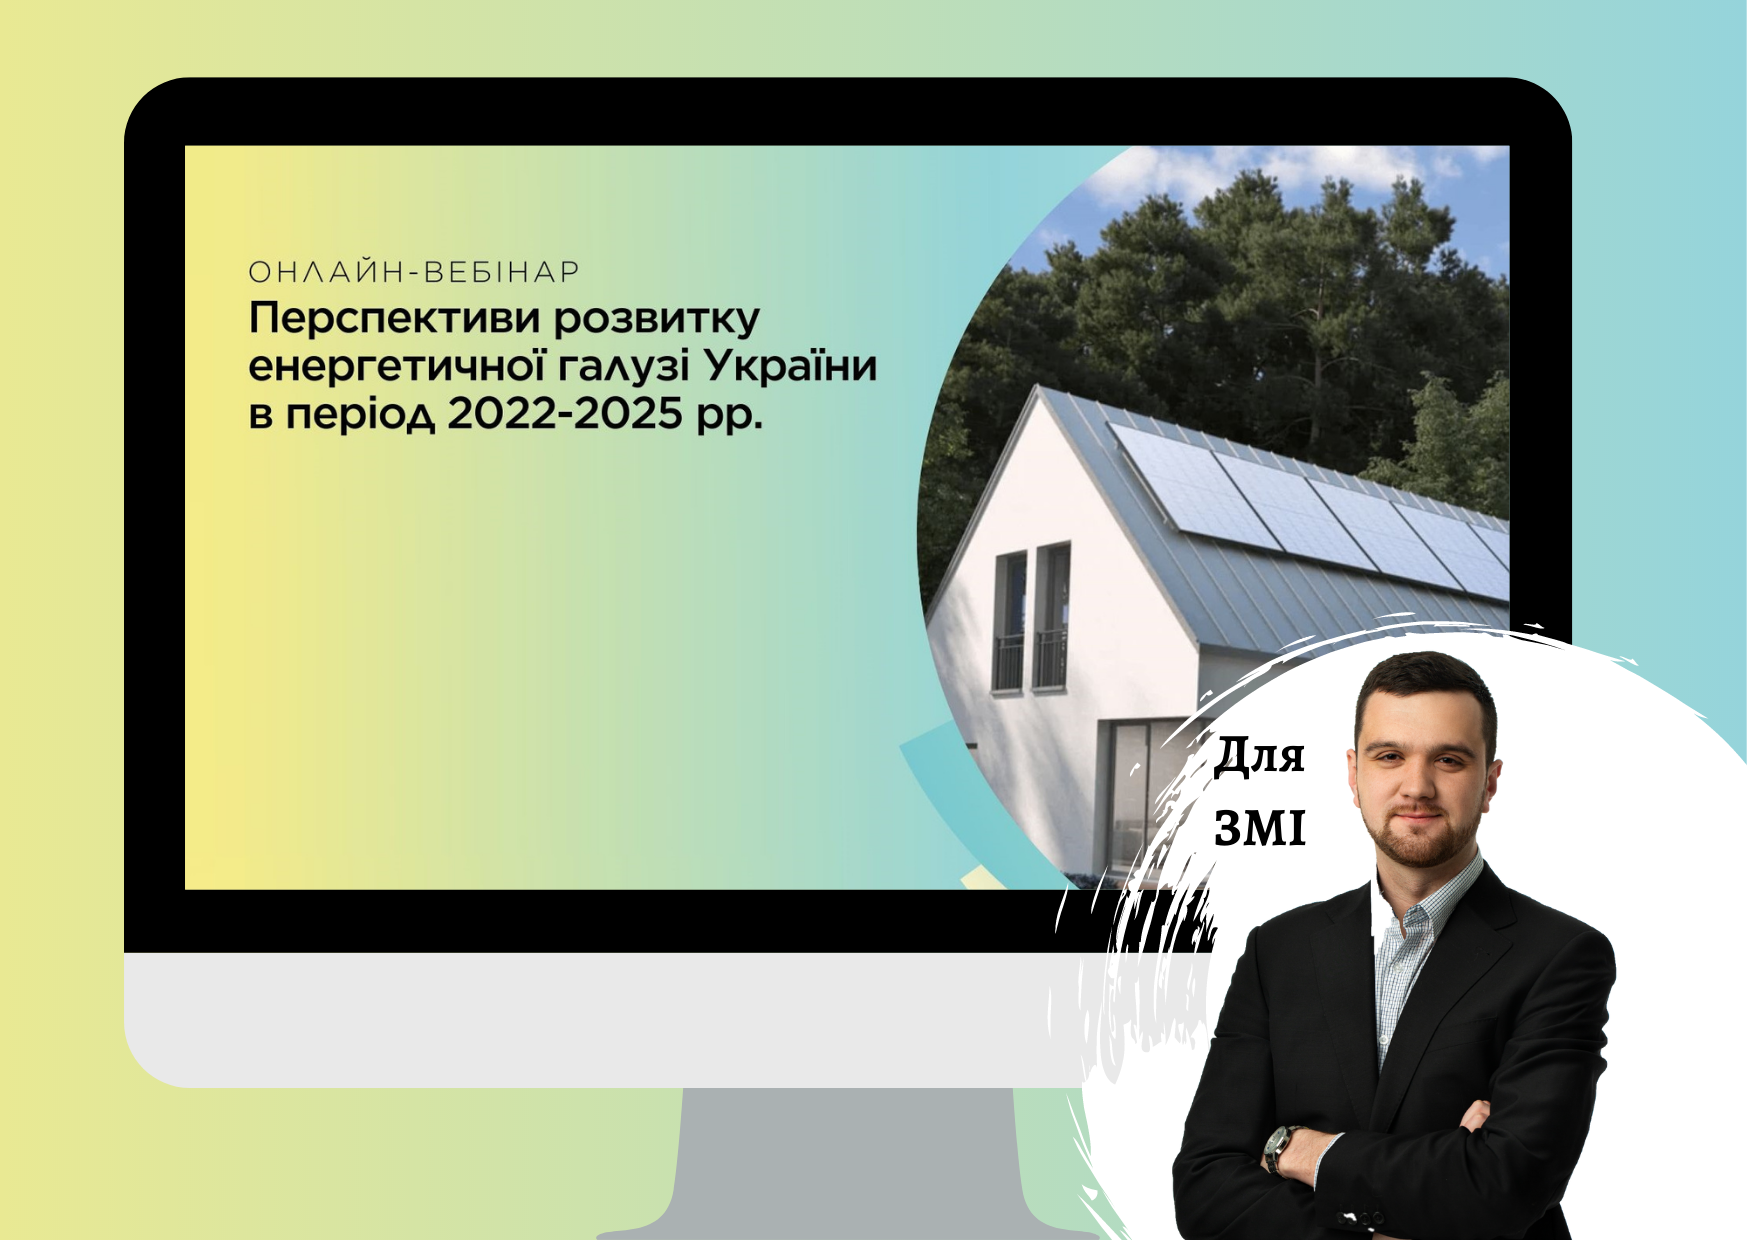 В вебинаре «Перспективы развития энергетической отрасли Украины» принял участие Андрей Мокряков, старший консультант Pro-Consulting